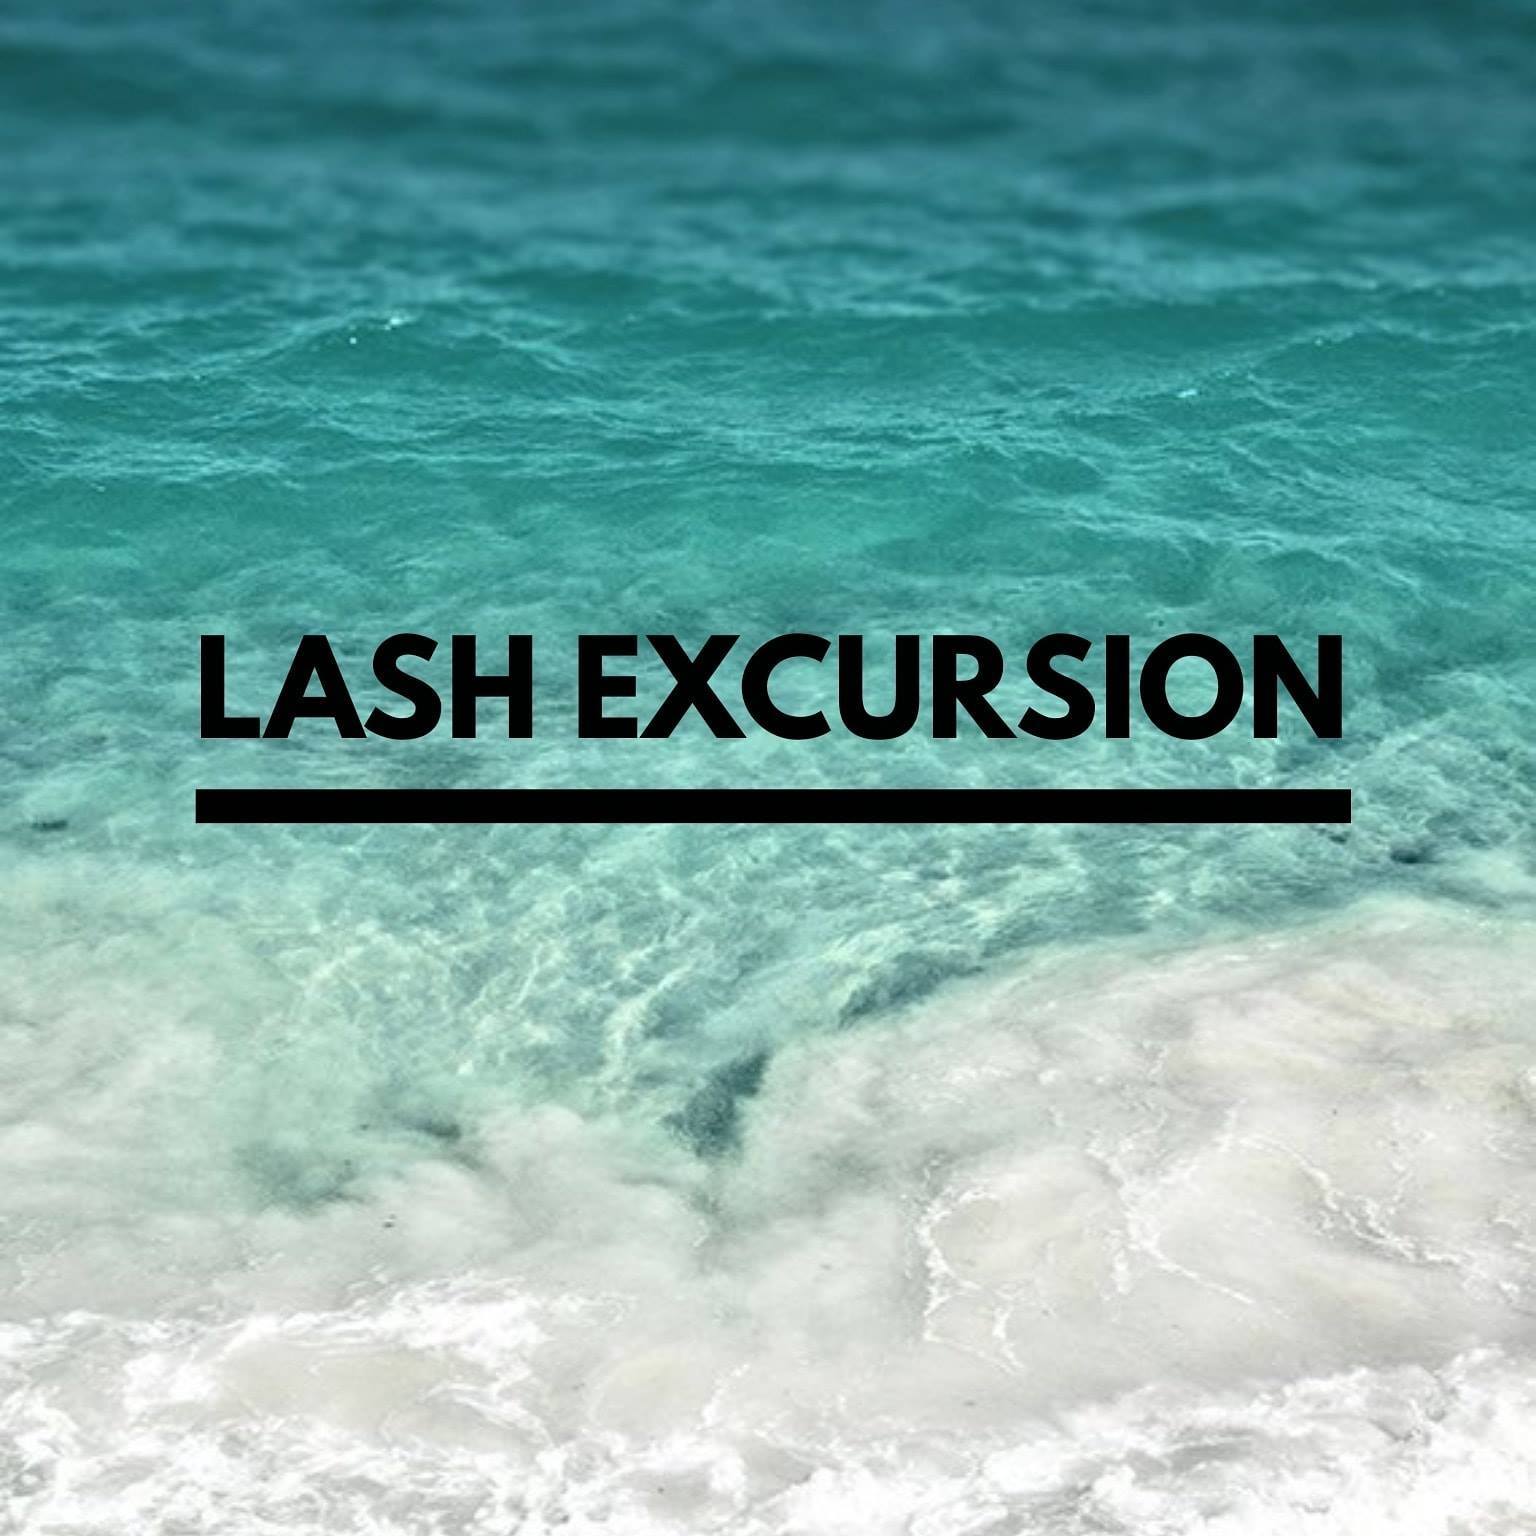 lash excursion logo